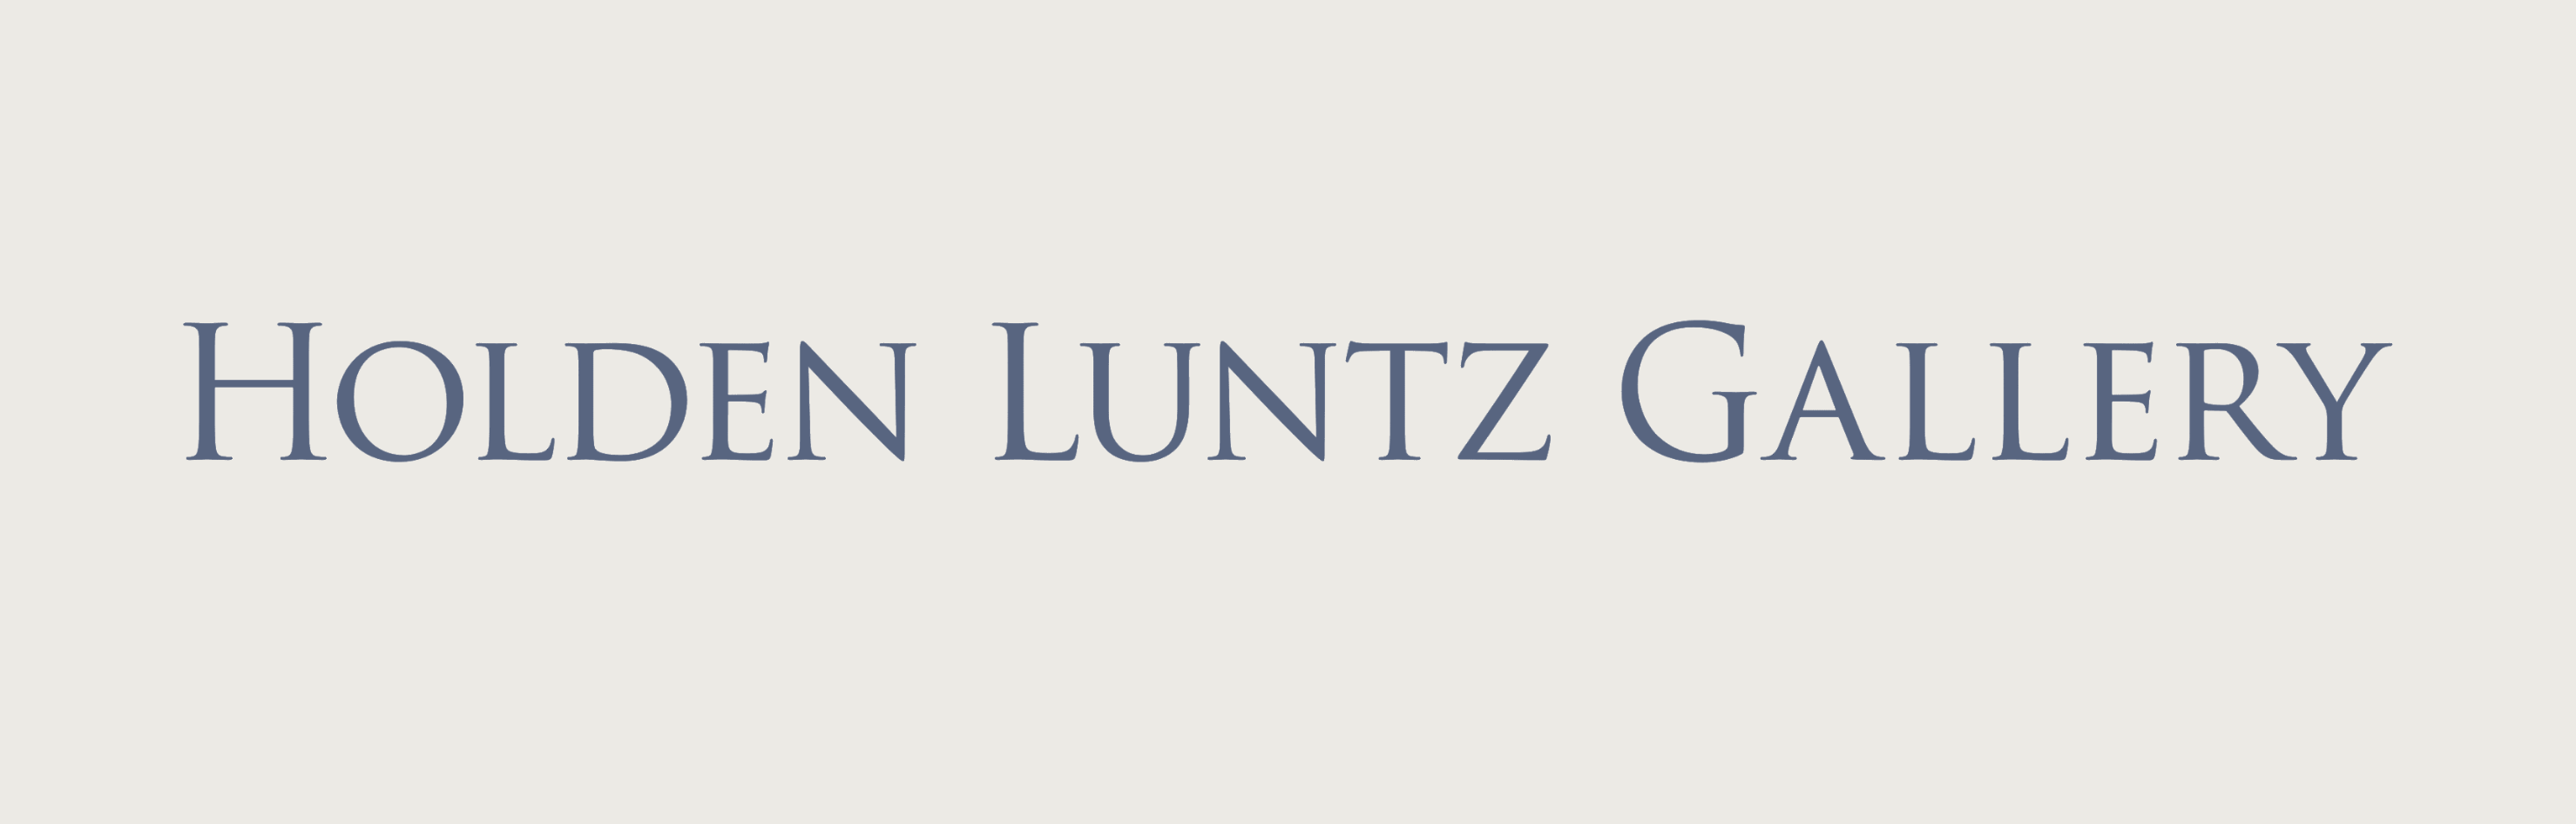 Holden Luntz Gallery